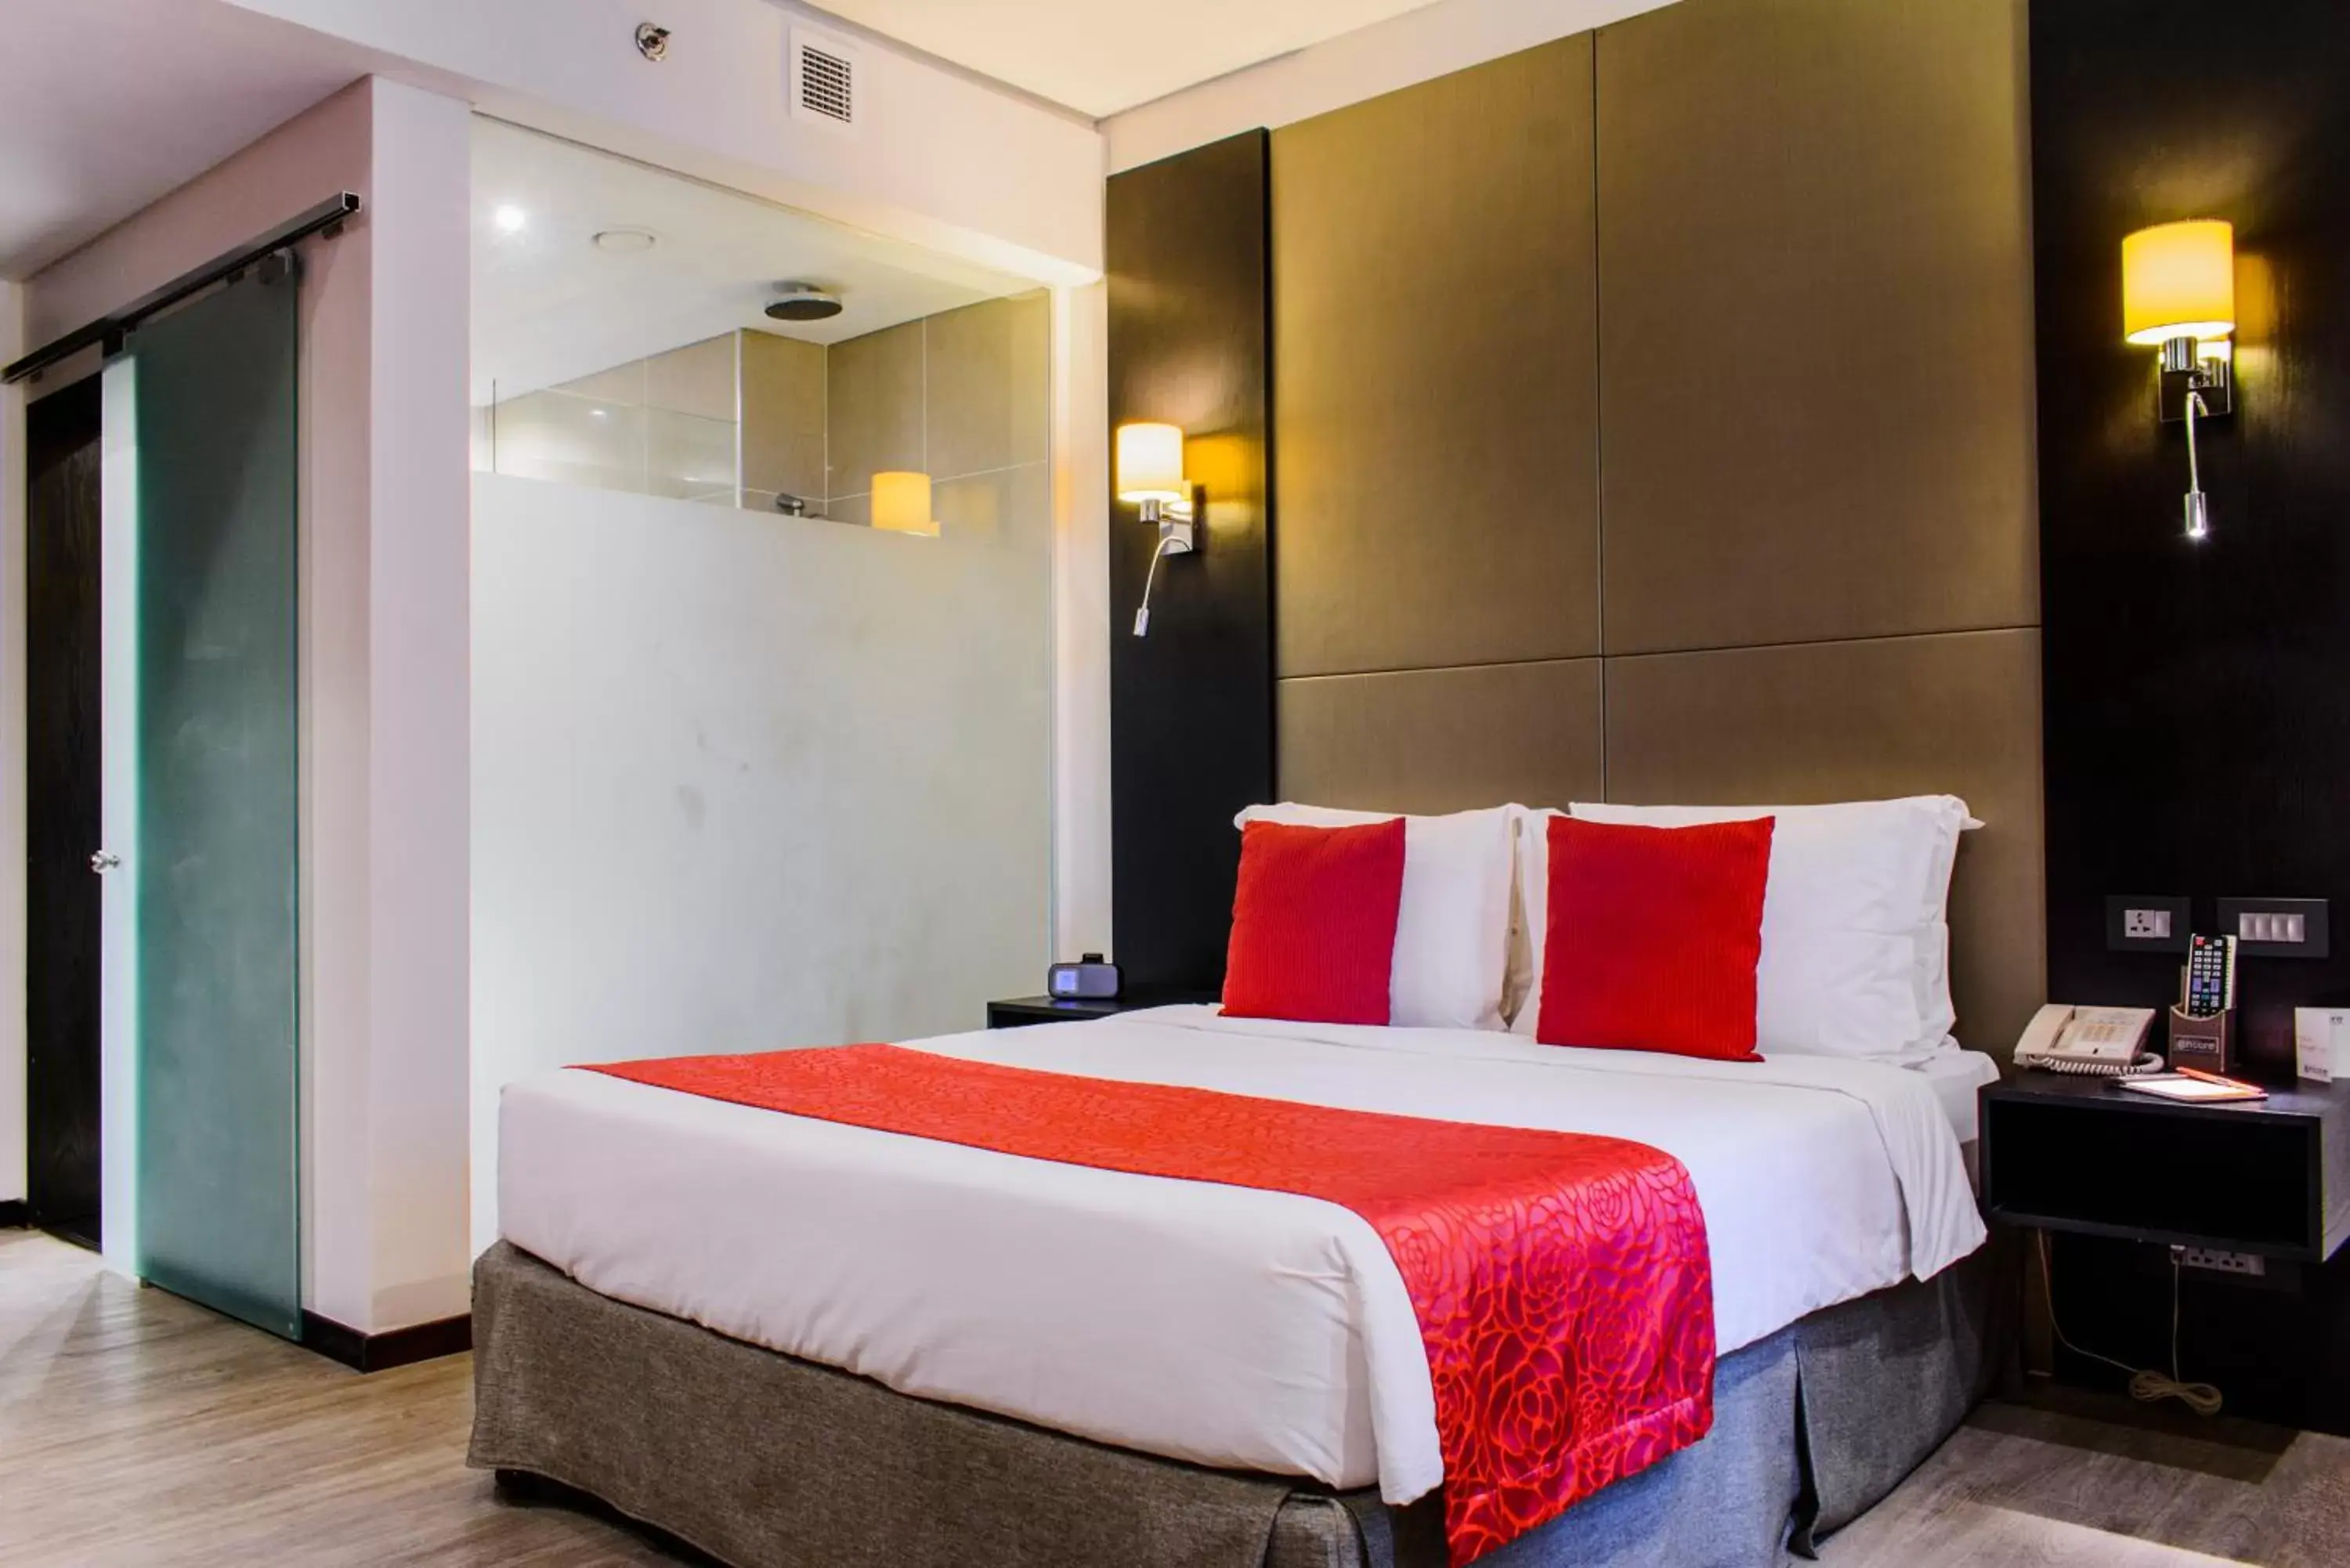 Bed in Onomo Hotel Dar es Salaam